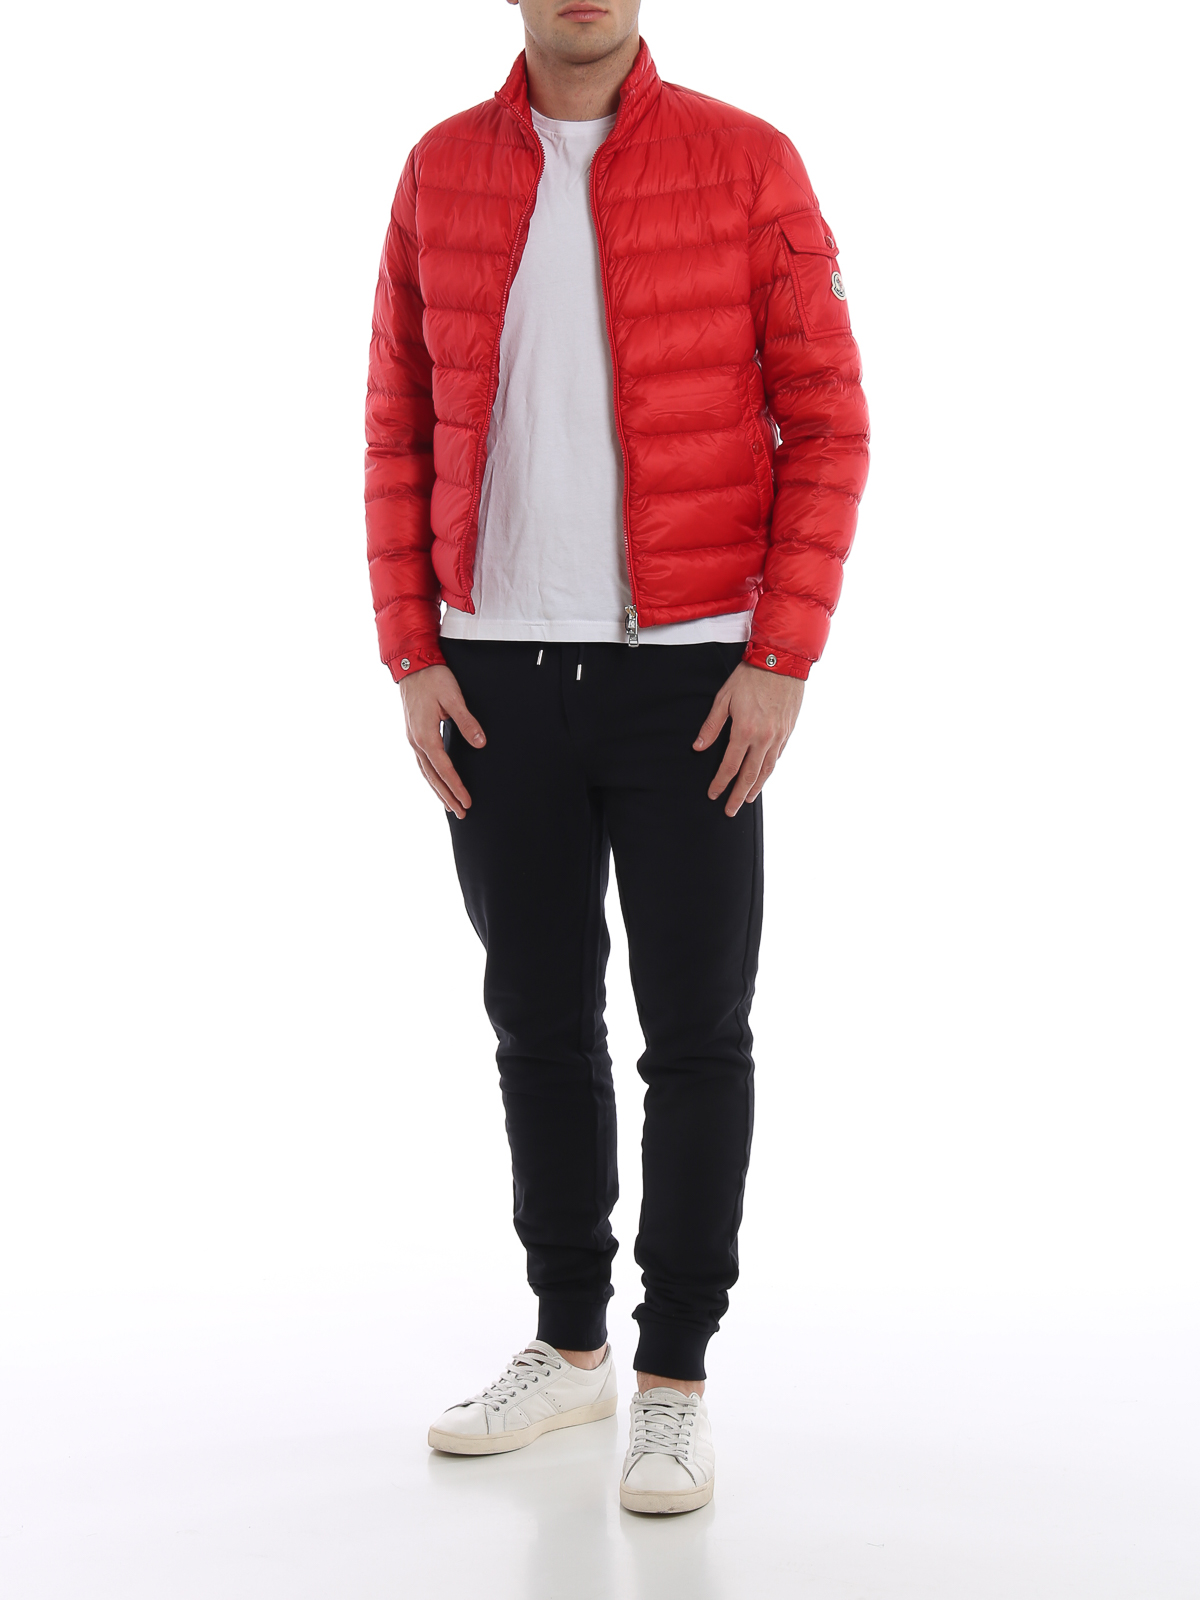 Moncler - Lambot red puffer jacket 